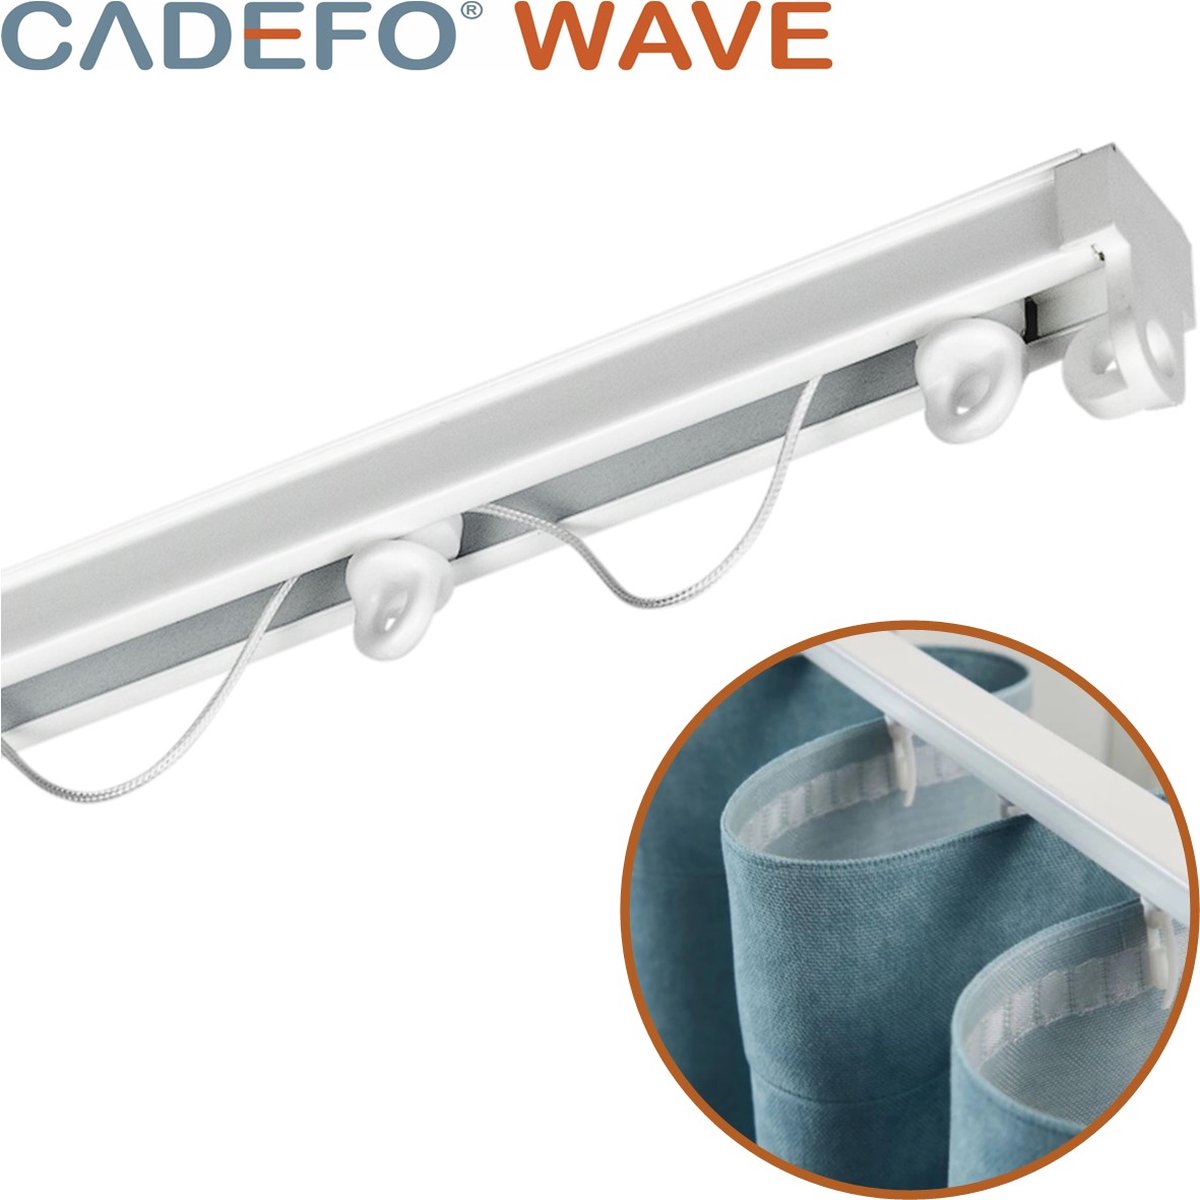 CADEFO WAVE (251 - 300 cm) Gordijnrails - Compleet op maat! - UIT 1 STUK - Leverbaar tot 6 meter - Plafondbevestiging - Lengte 298 cm